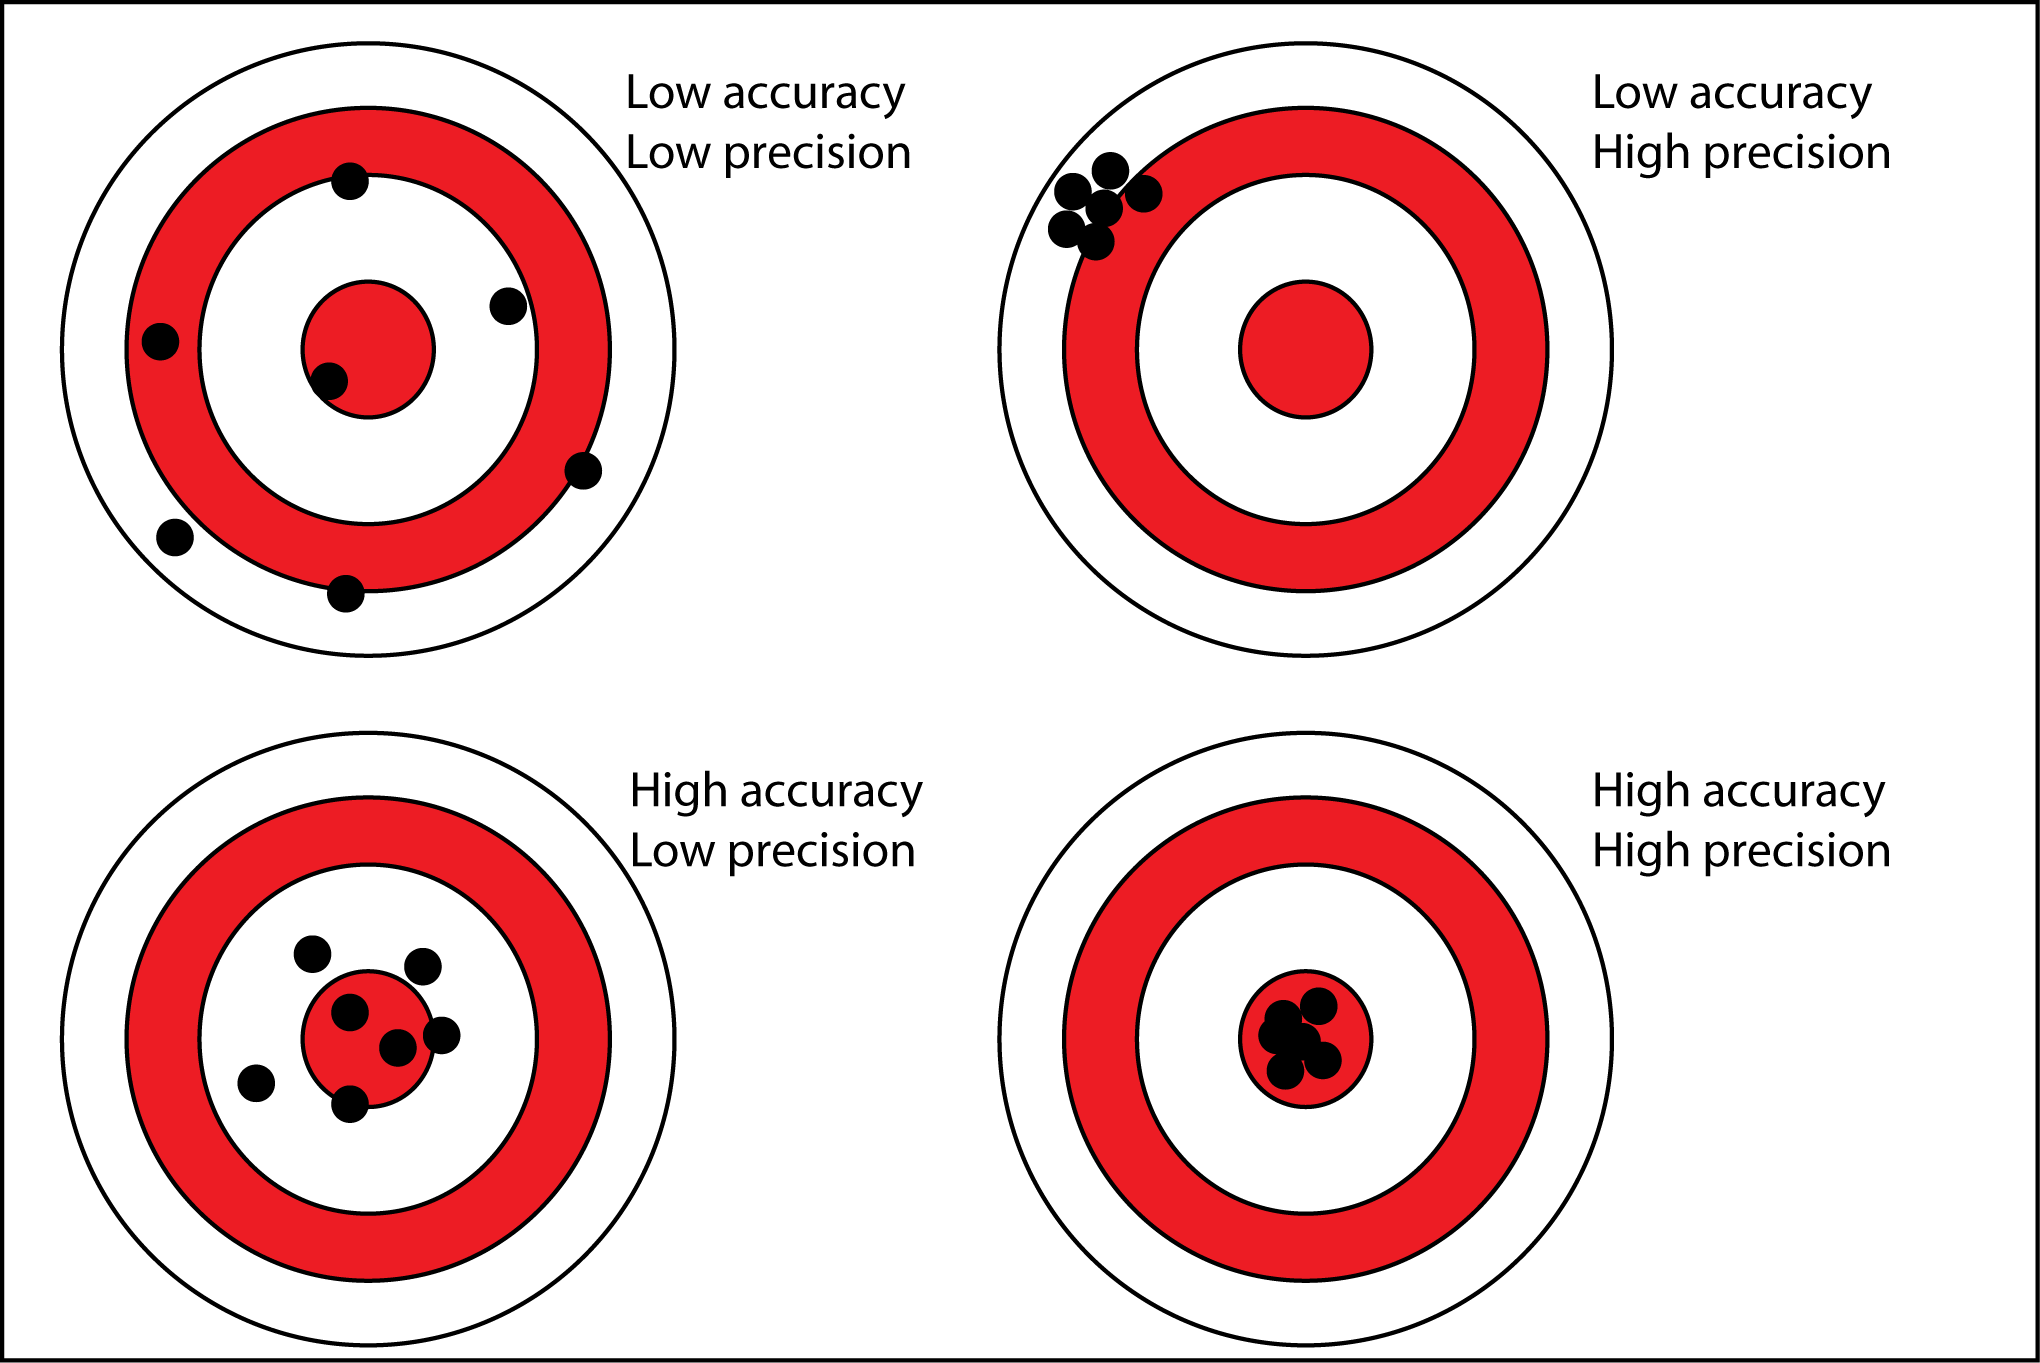 accuracy-precision